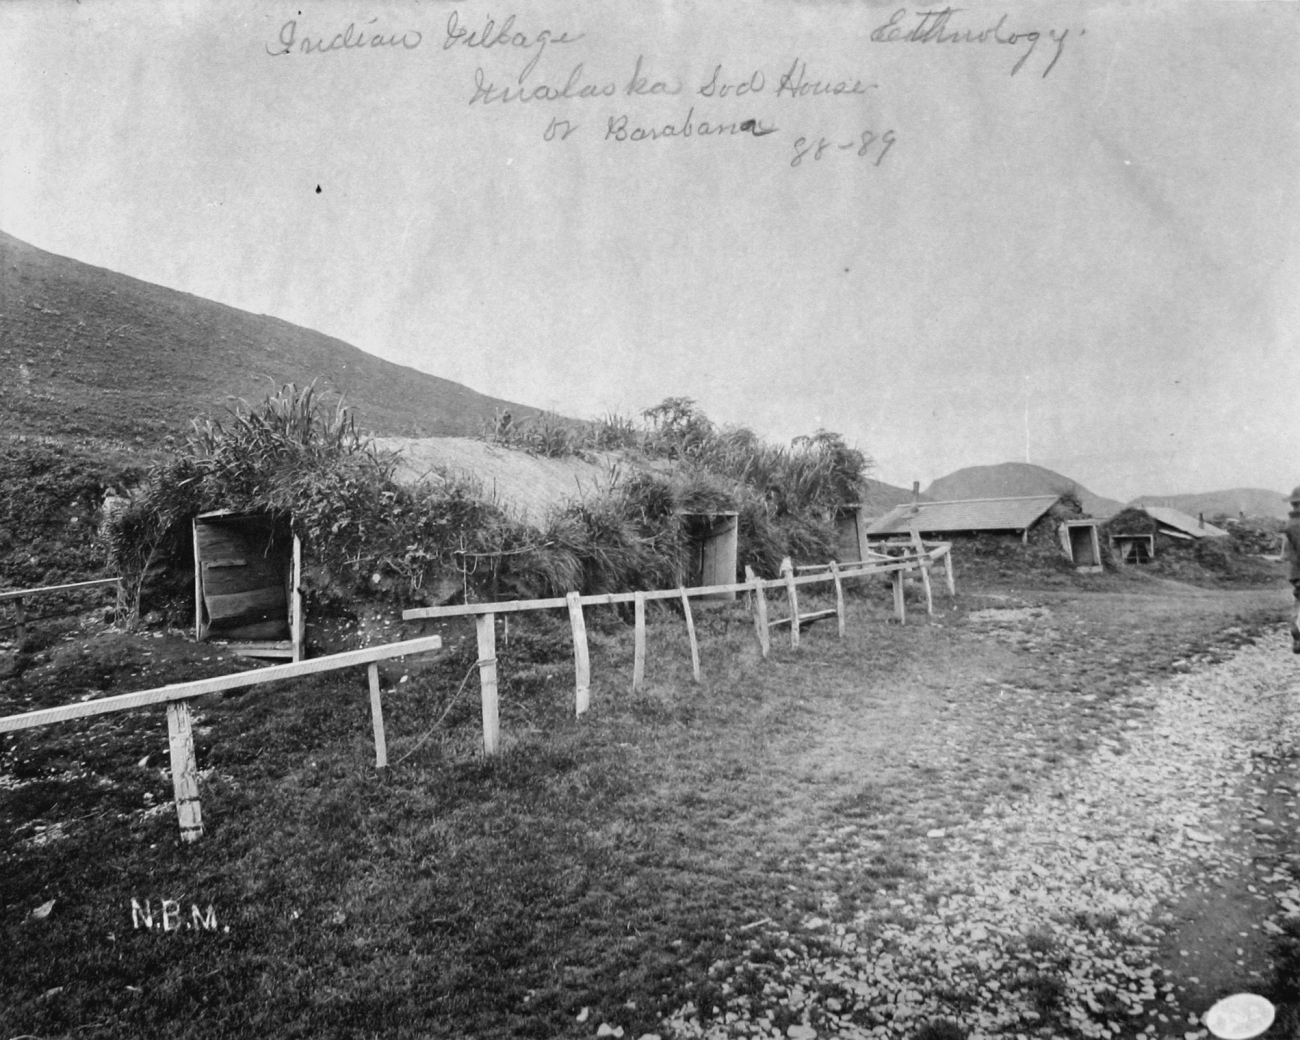 Indian village, Unalaska sod house or barabara, AK, 1888-89